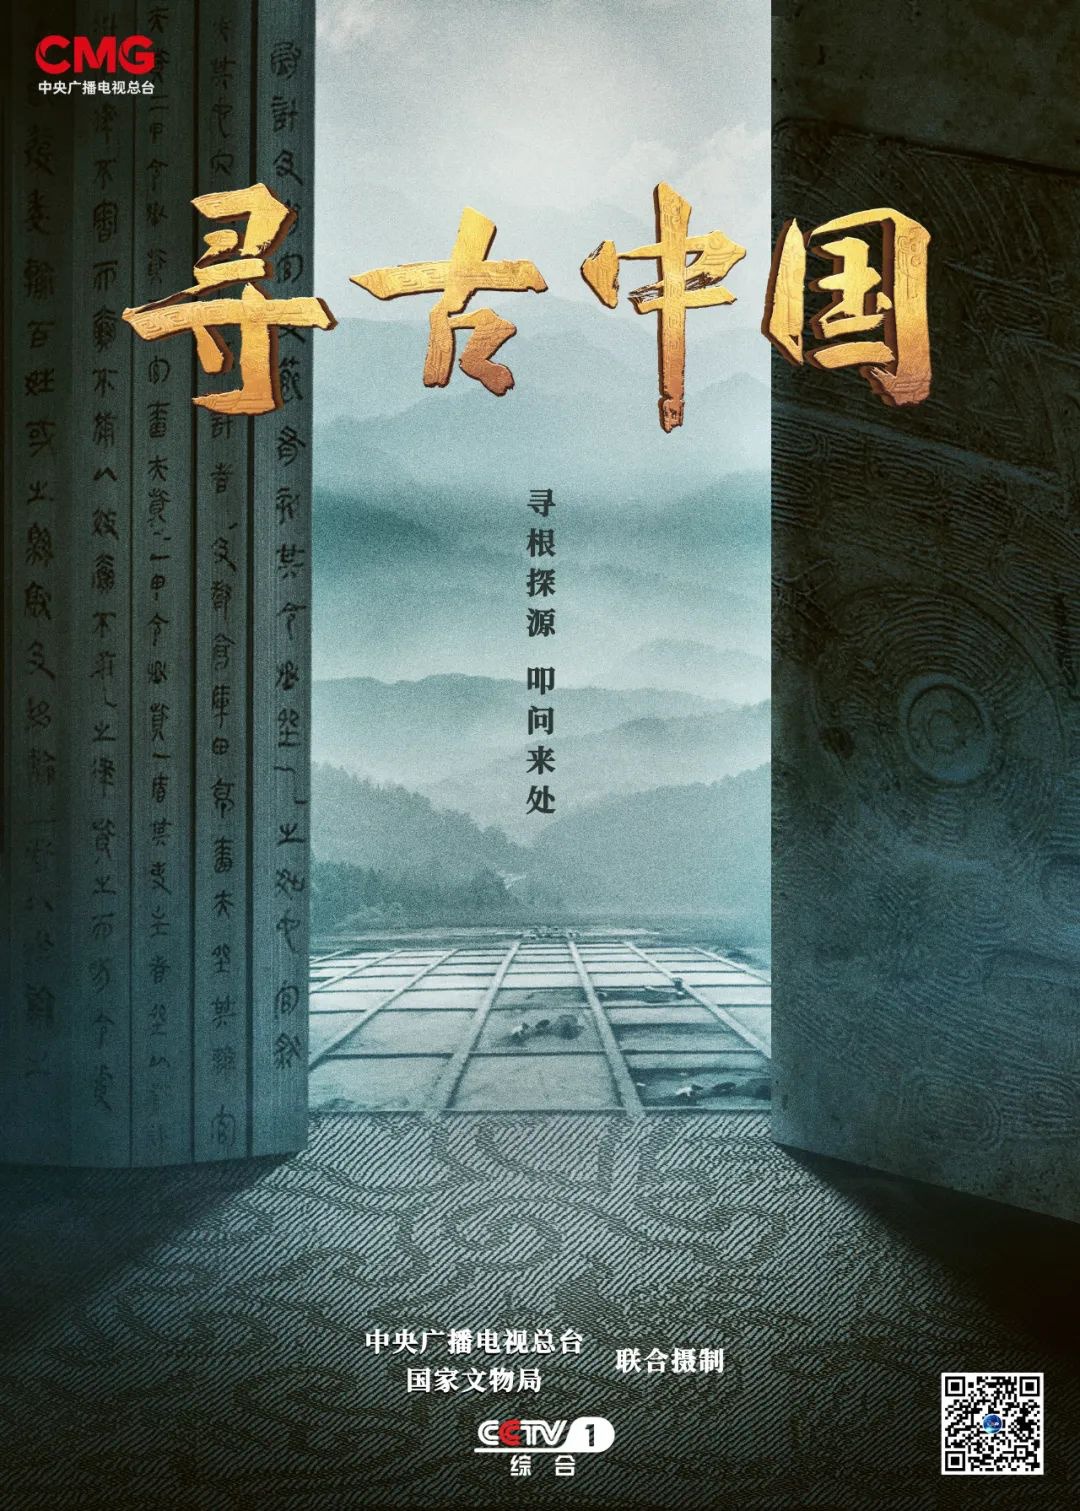 當代中國-社會民生-央視國家文物局合拍《尋古中國》紀錄片